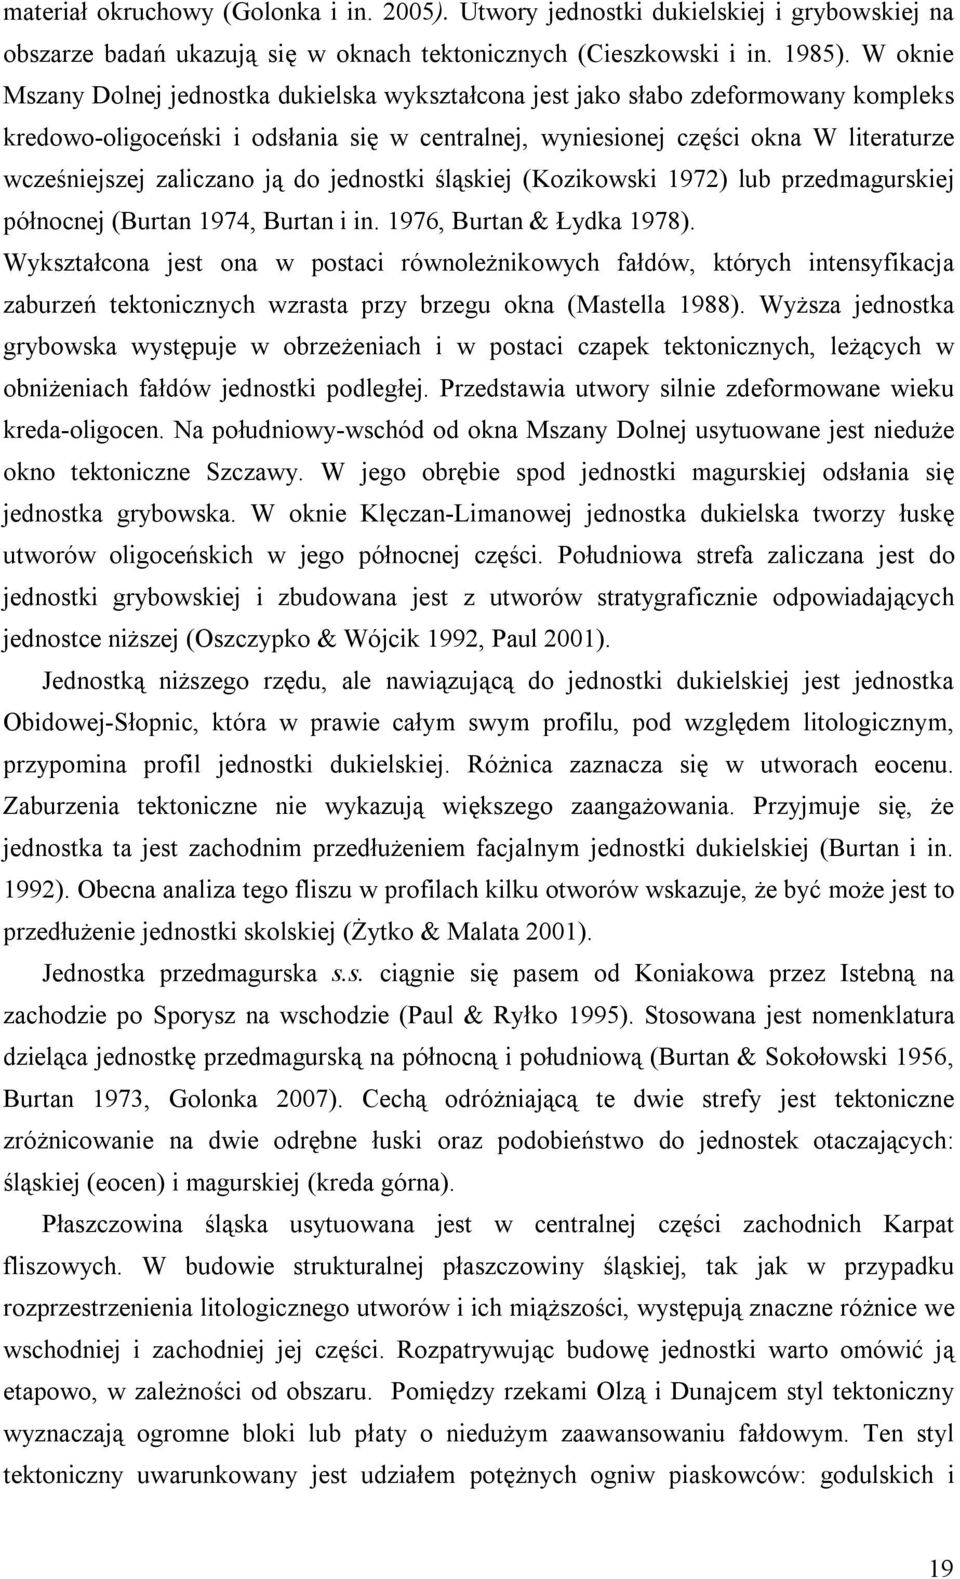 zaliczano ją do jednostki śląskiej (Kozikowski 1972) lub przedmagurskiej północnej (Burtan 1974, Burtan i in. 1976, Burtan & Łydka 1978).